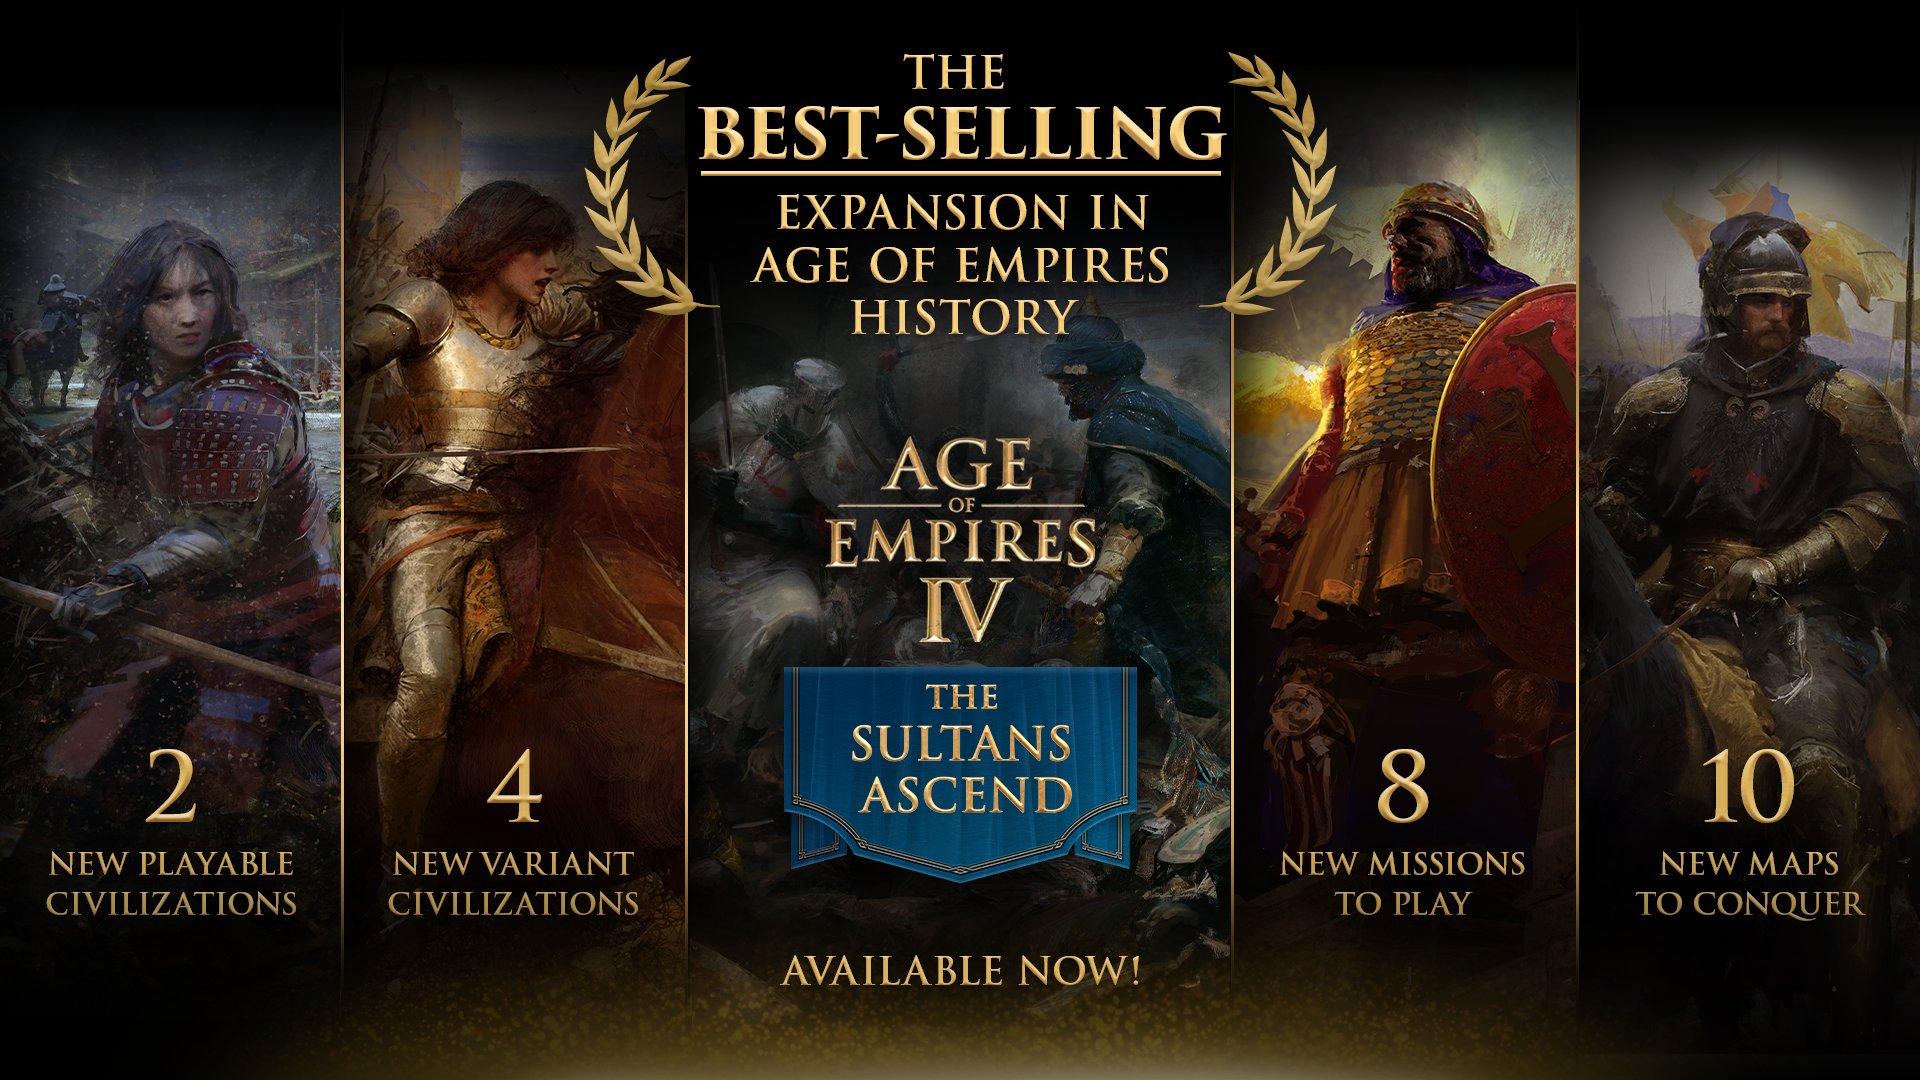 “苏丹崛起”成《帝国时代》全系列DLC销量最佳